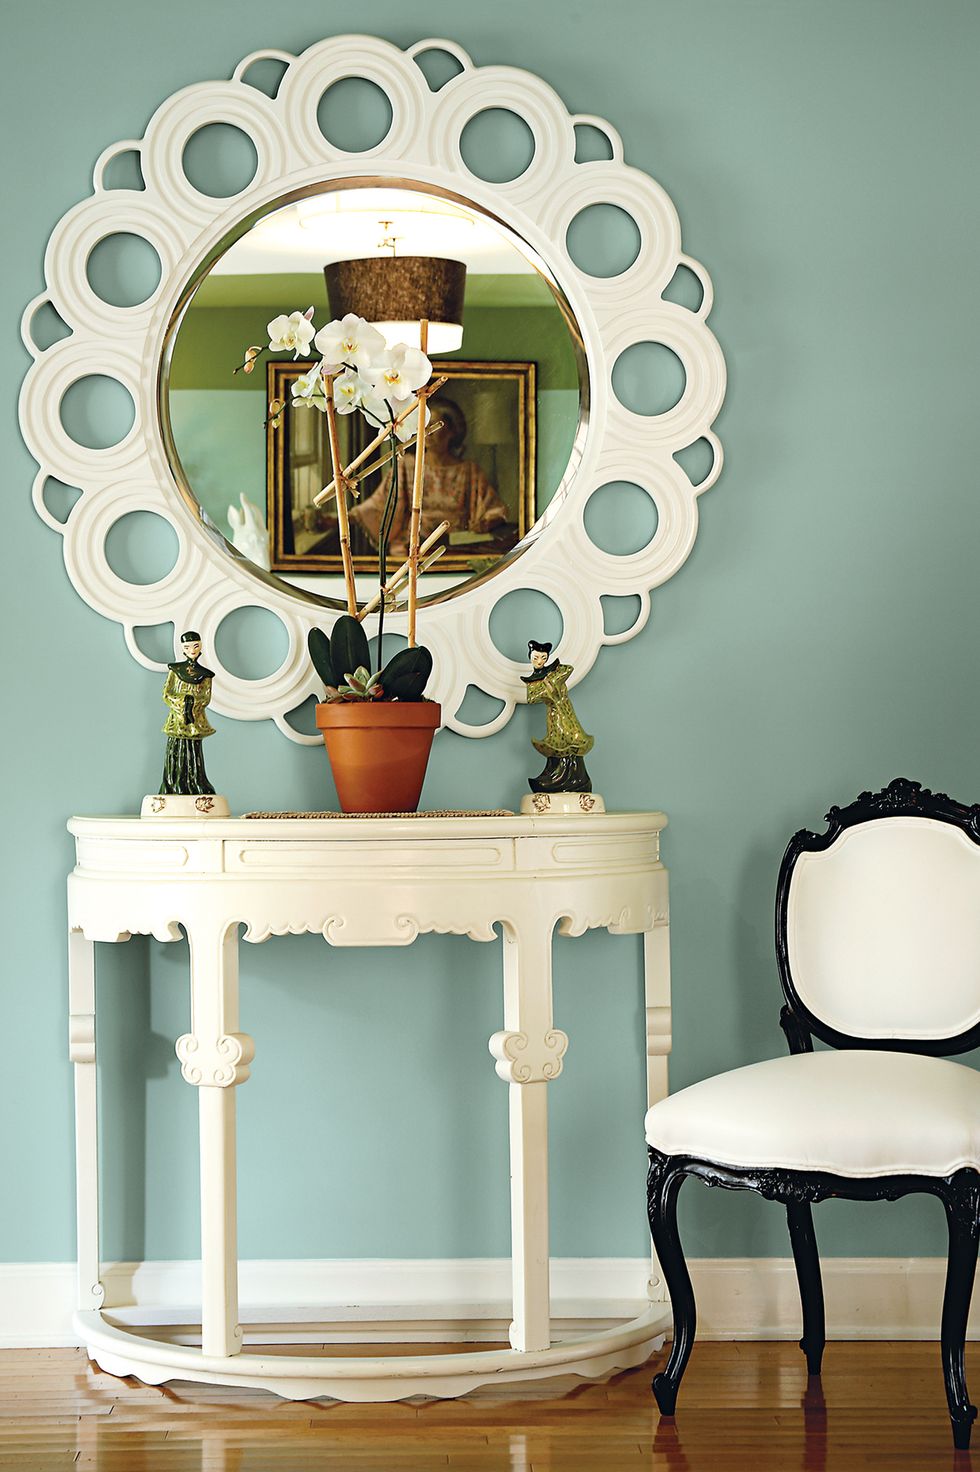 hình ảnh một góc nhà với bàn gương trăng điểm màu trắng, ghế ngồi khung đen, chậu cây trang trí, tượng điêu khắc nhỏ, tường màu xanh lam